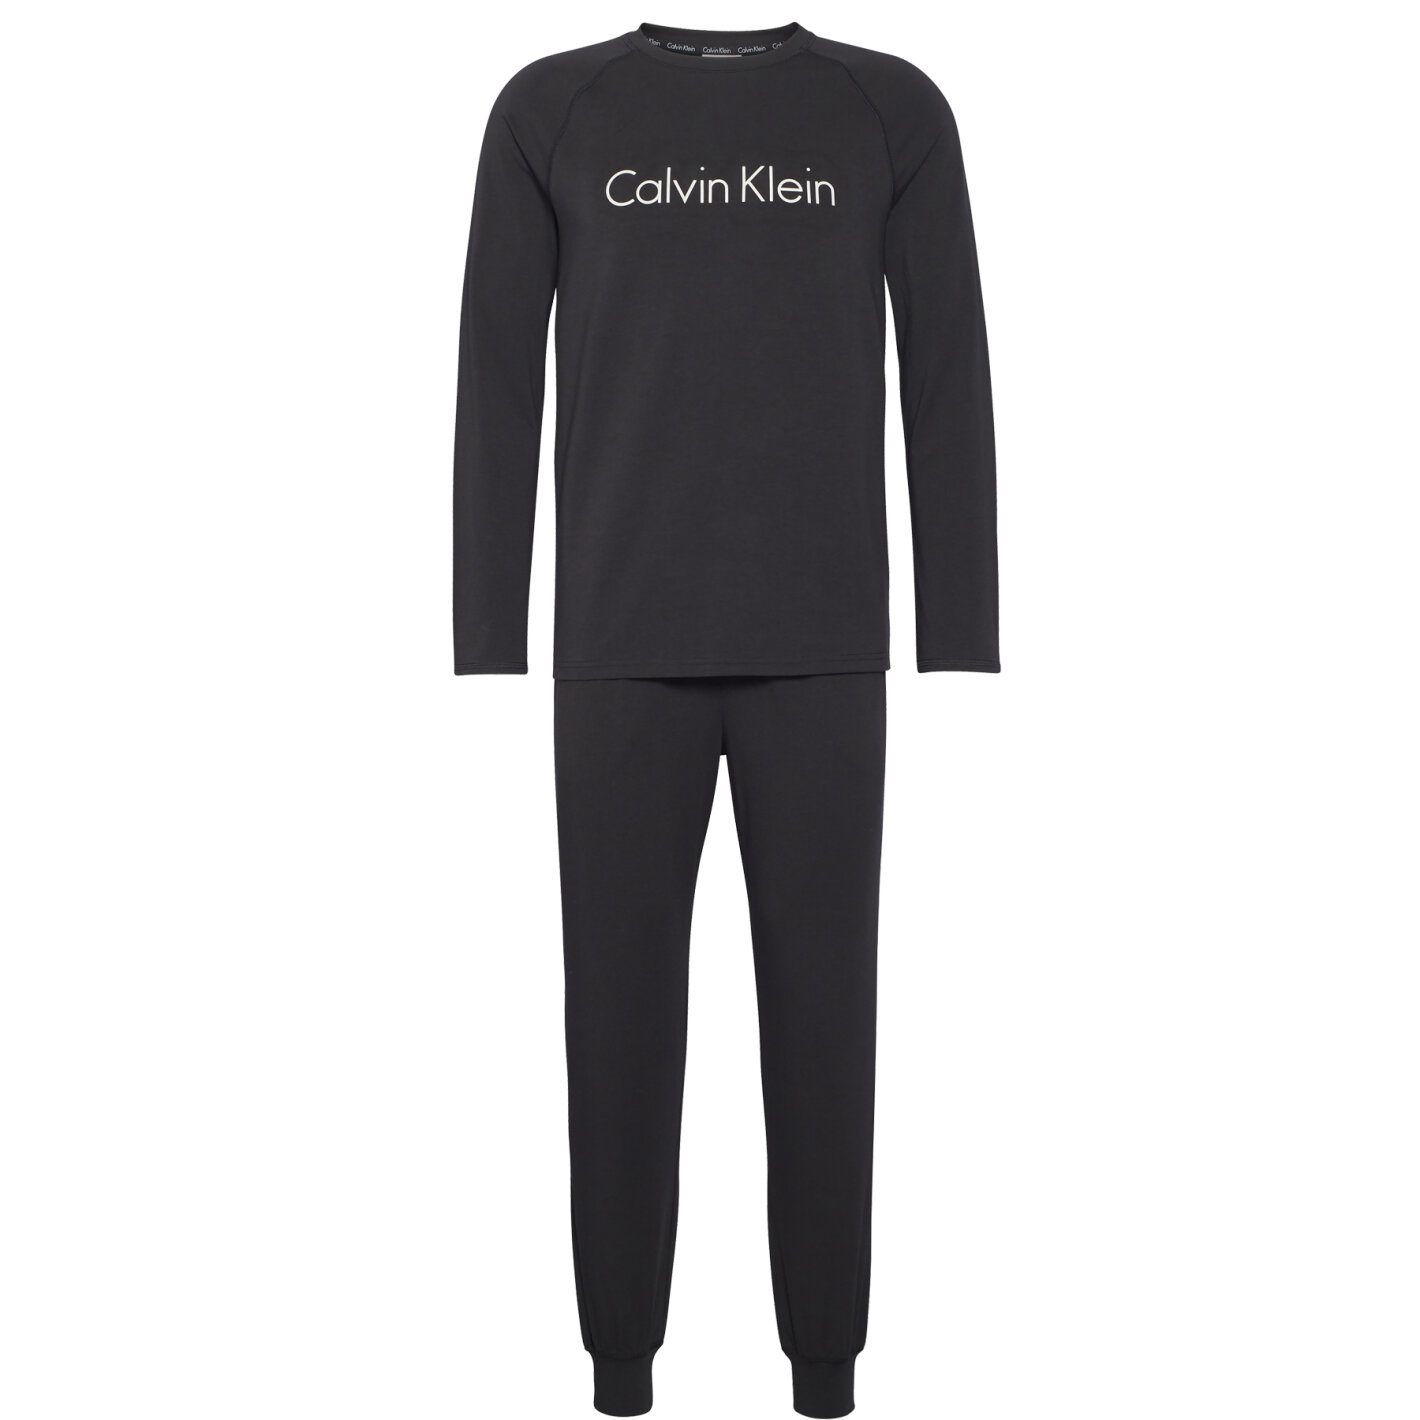 beskyttelse Emuler Berolige Køb Calvin Klein Pyjamas - Fri fragt på Toftshop.dk